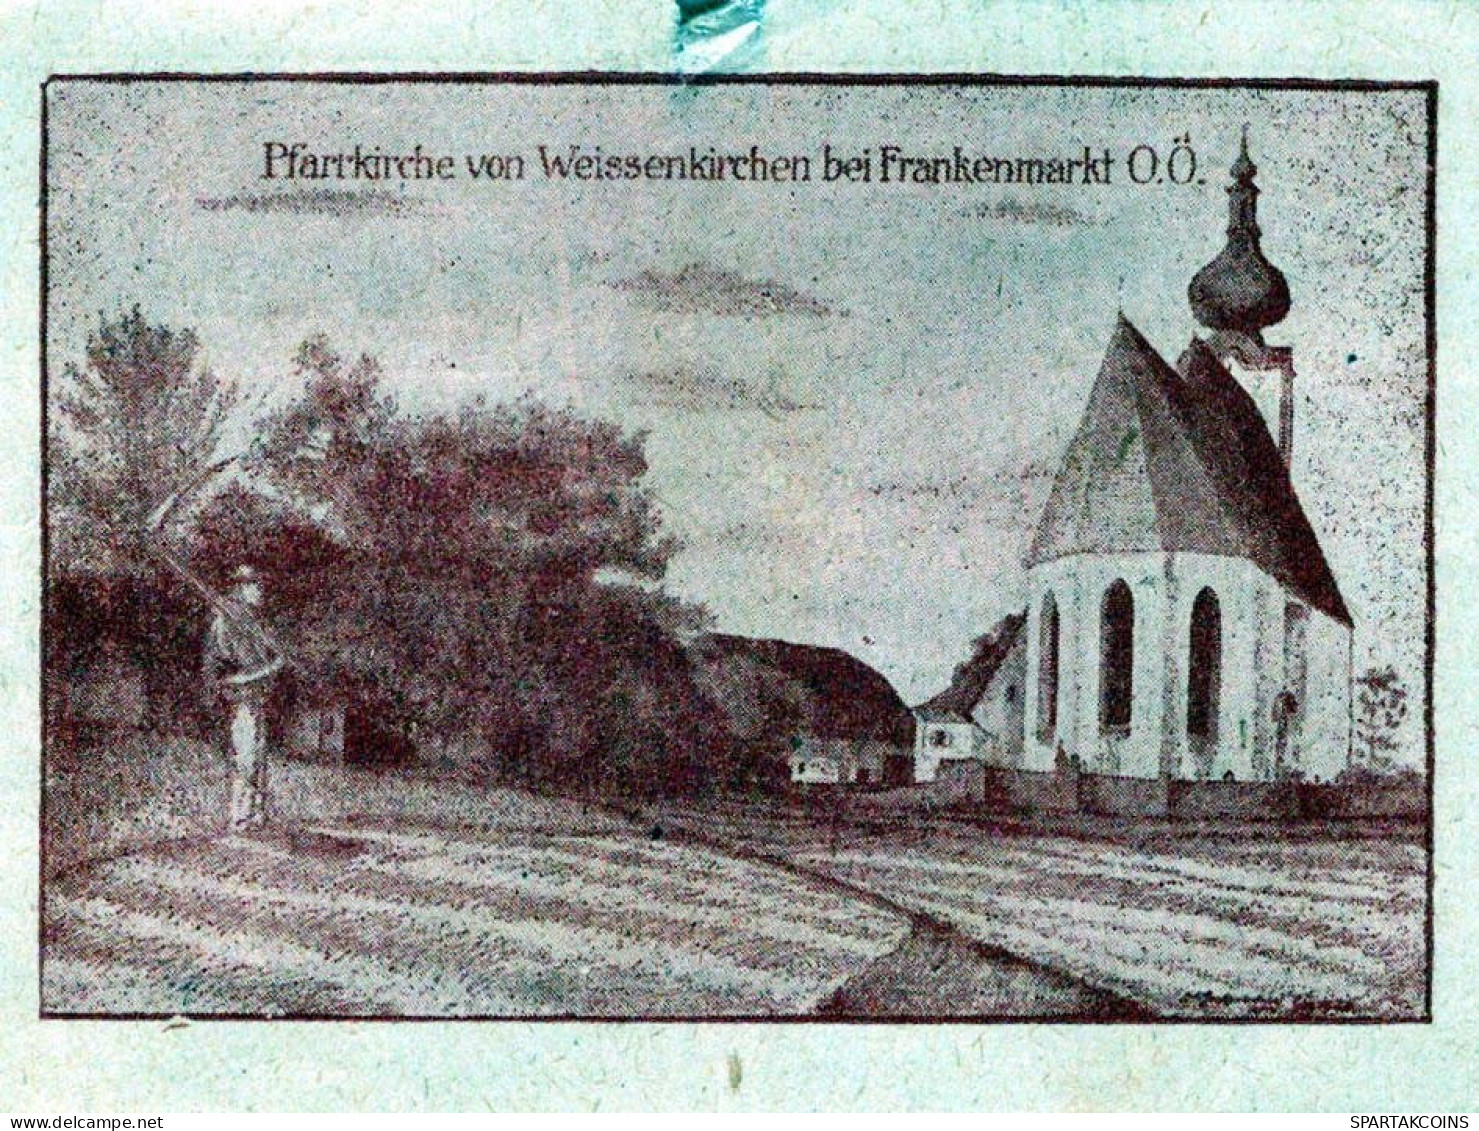 20 HELLER 1920 WEISSENKIRCHEN BEI FRANKENMARKT Oberösterreich Österreich #PI394 - [11] Local Banknote Issues